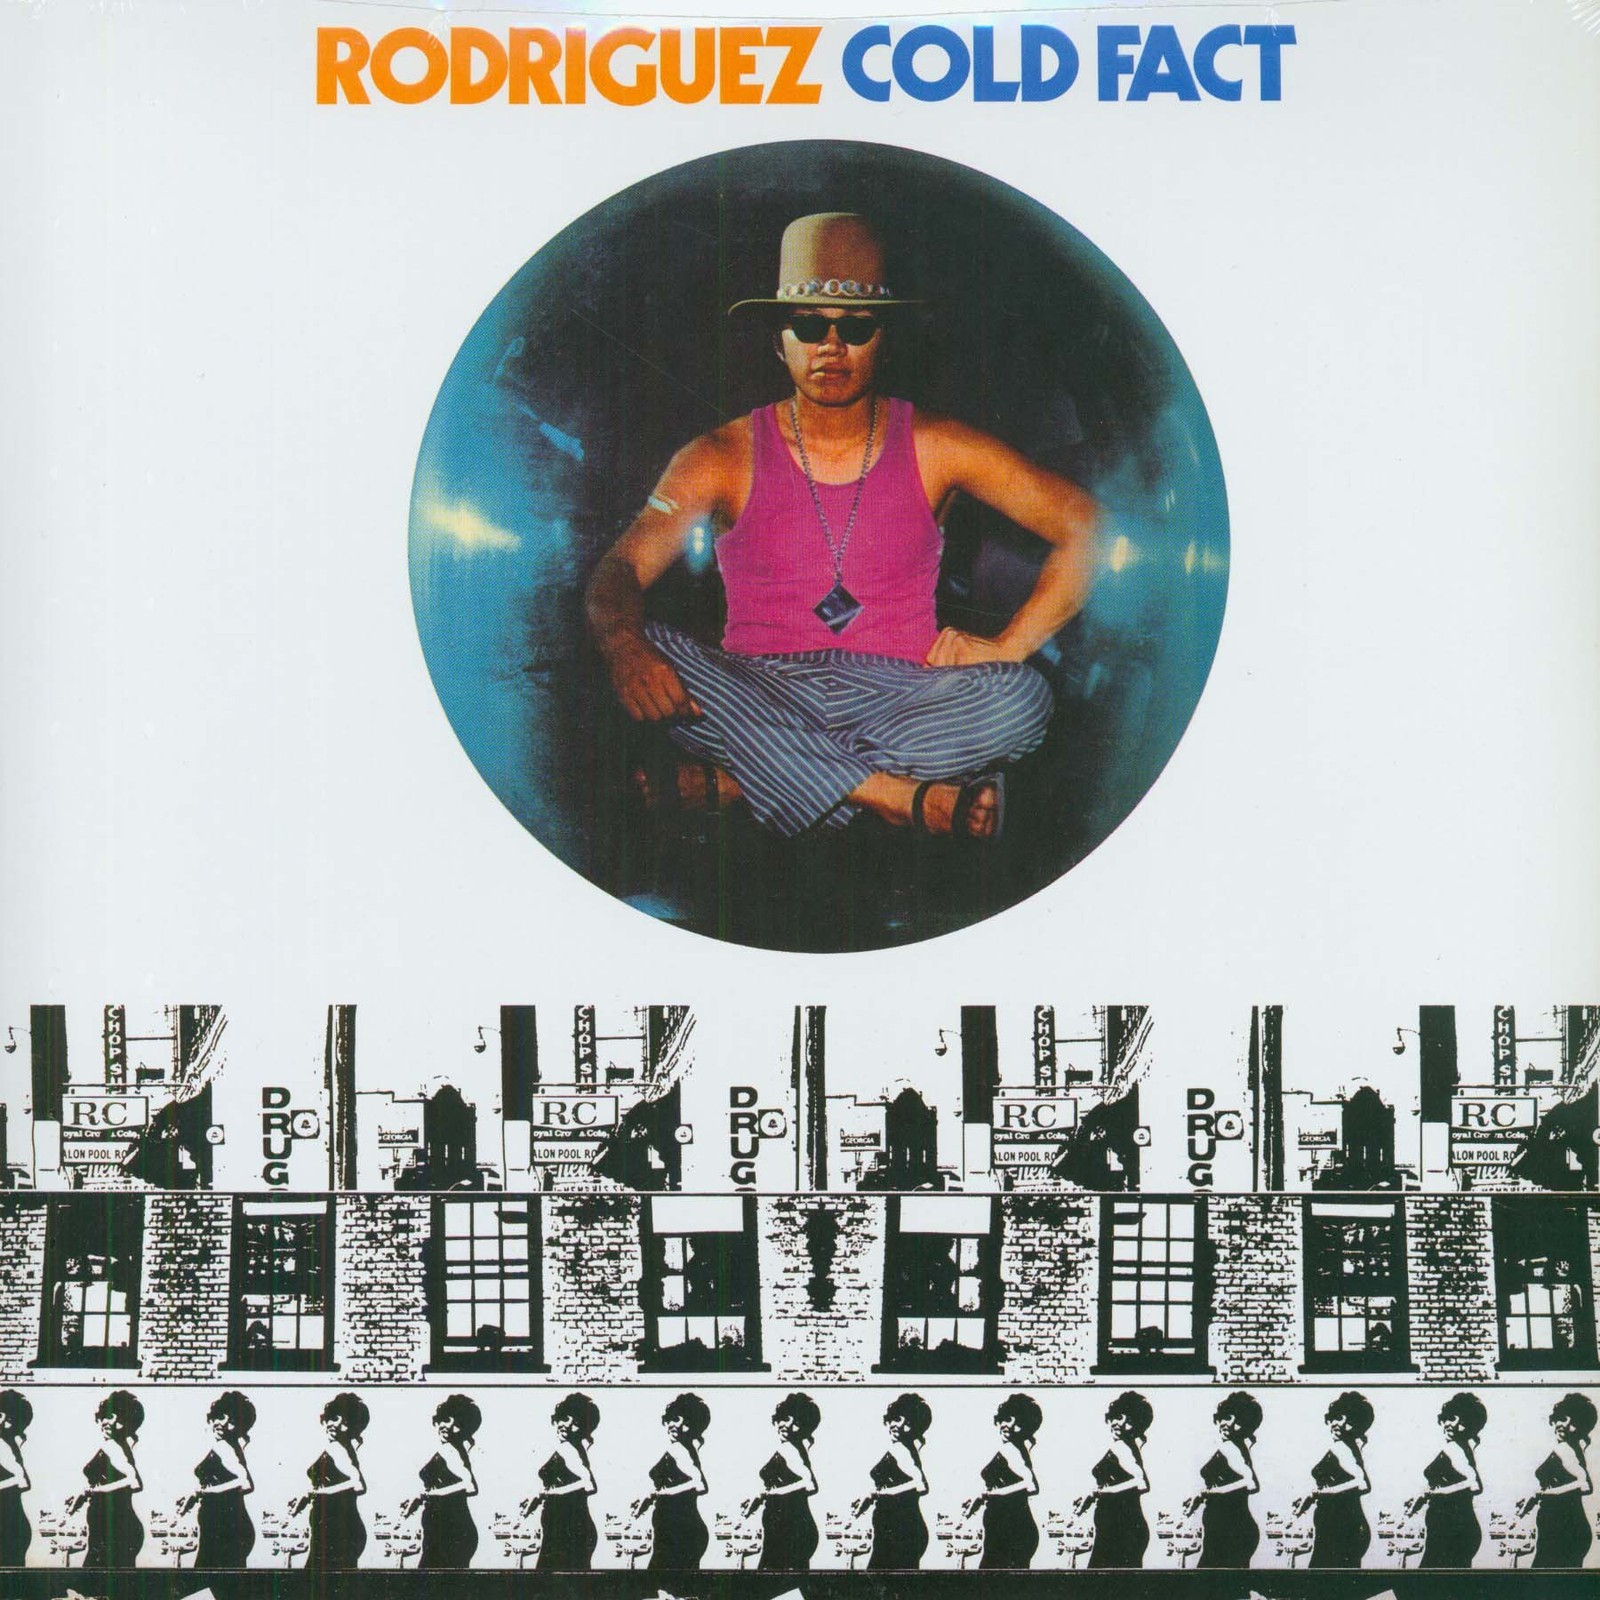 ¿Qué estáis escuchando ahora? - Página 18 Rodriguez+Cold+Fact